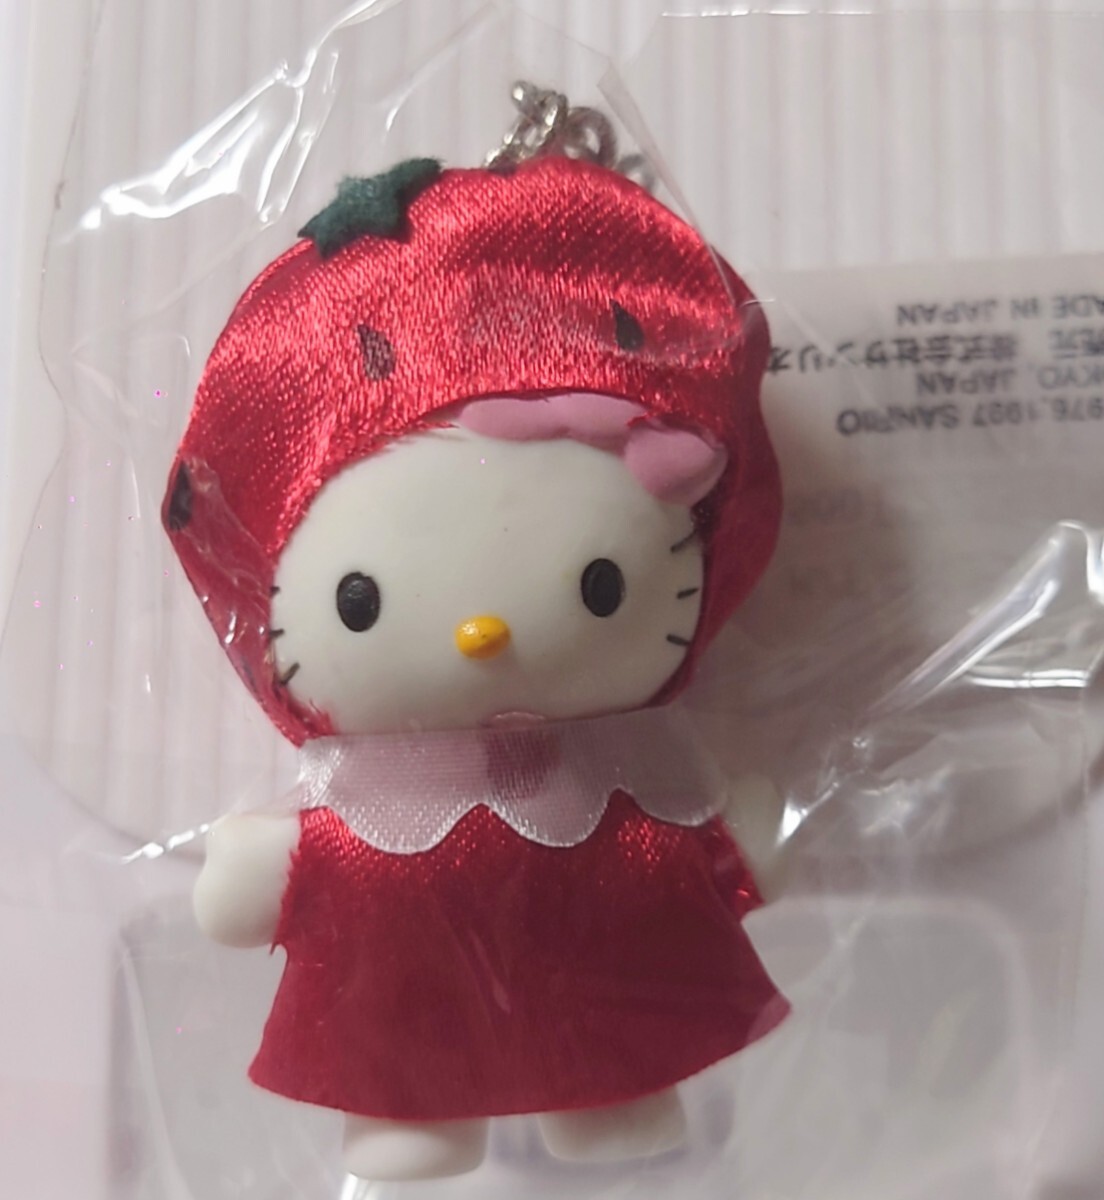 ハローキティ Hello Kitty コスチューム ドール マスコット 着ぐるみ キーホルダー イチゴ いちご ストロベリー strawberry 1997 タグ付きの画像2